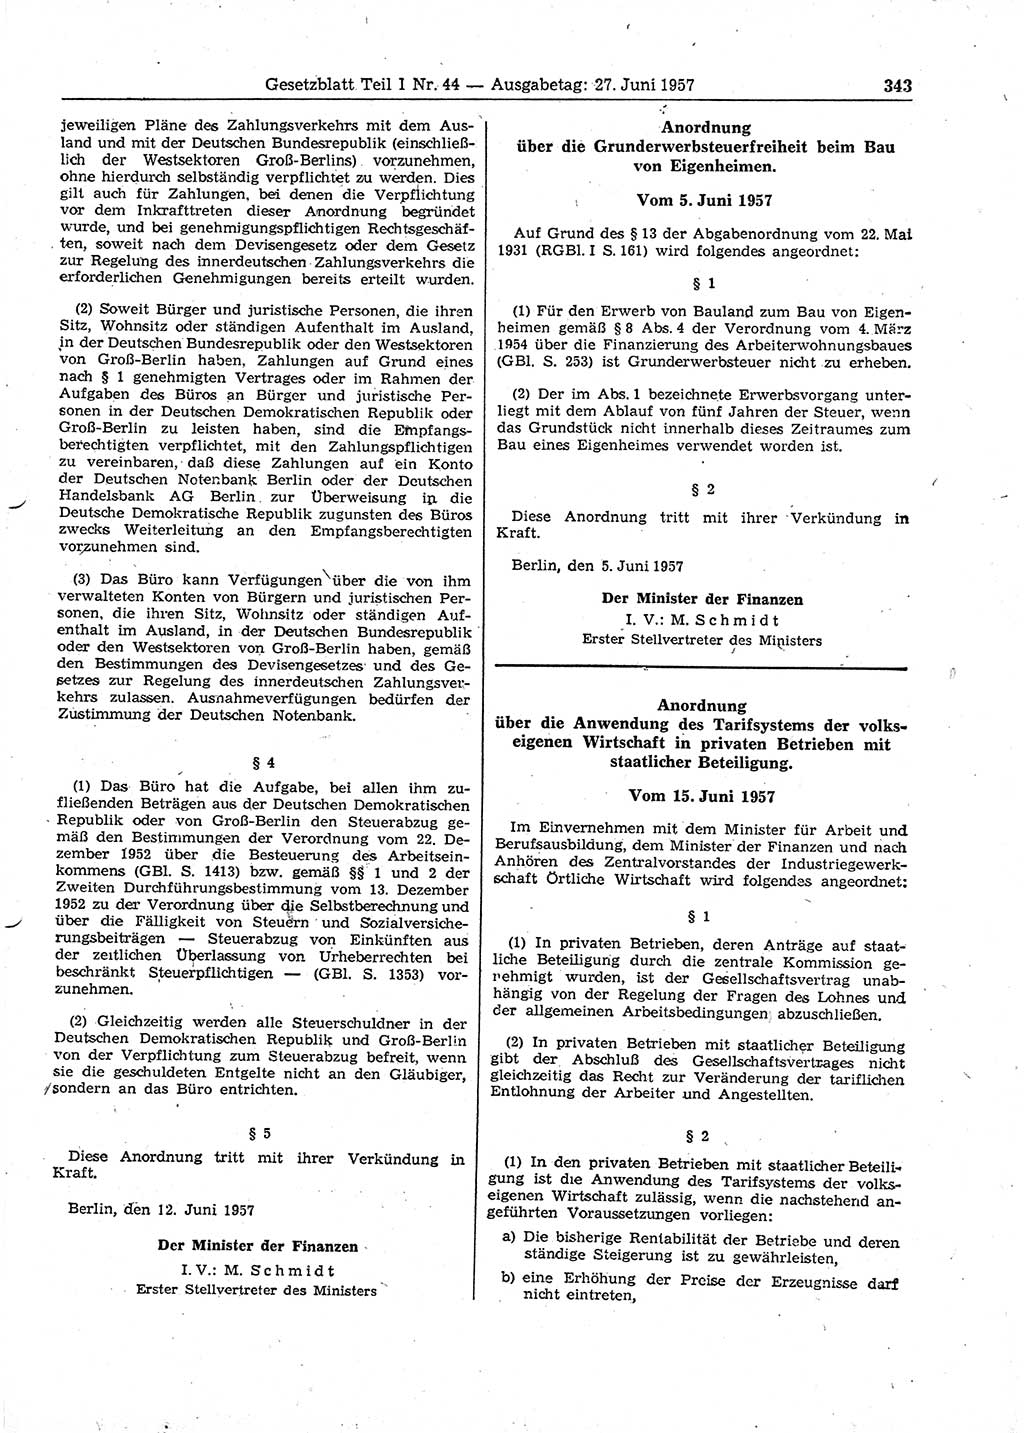 Gesetzblatt (GBl.) der Deutschen Demokratischen Republik (DDR) Teil Ⅰ 1957, Seite 343 (GBl. DDR Ⅰ 1957, S. 343)